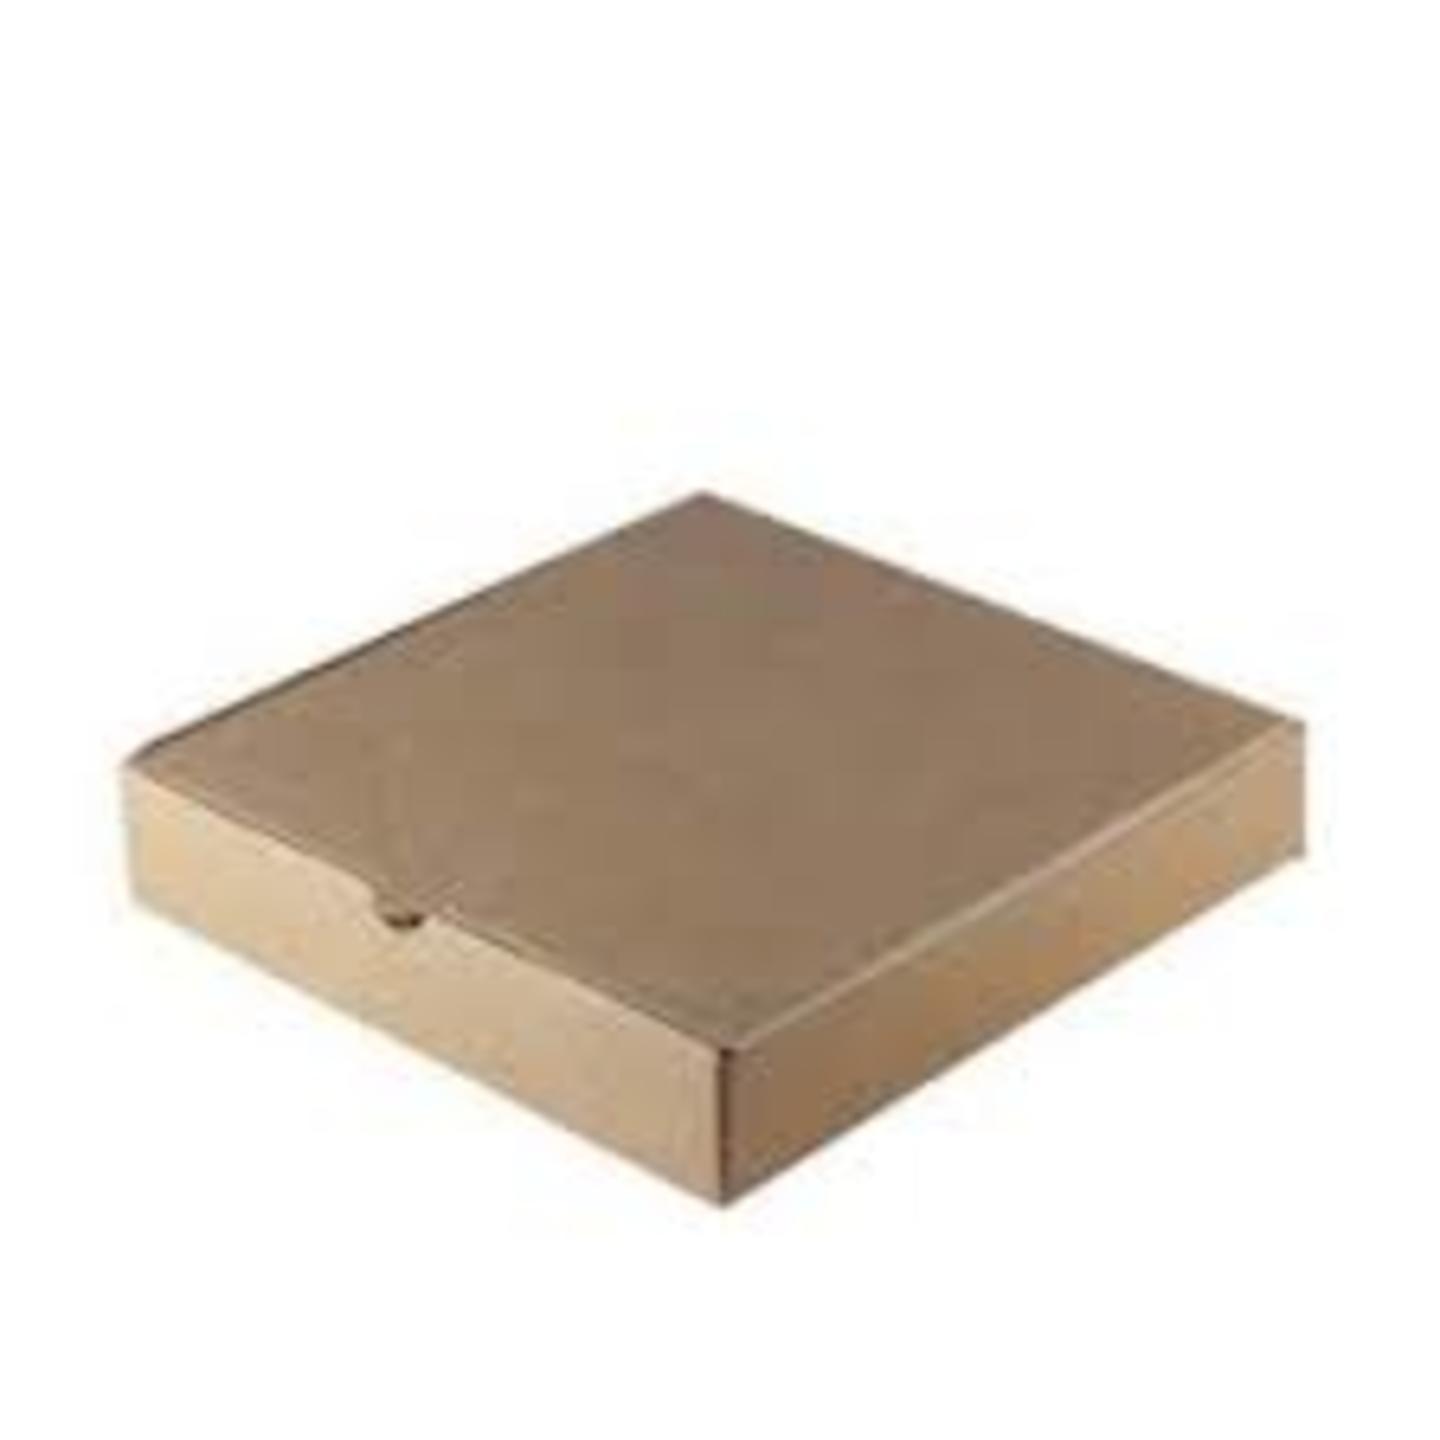 7.5 inch Pizza Box